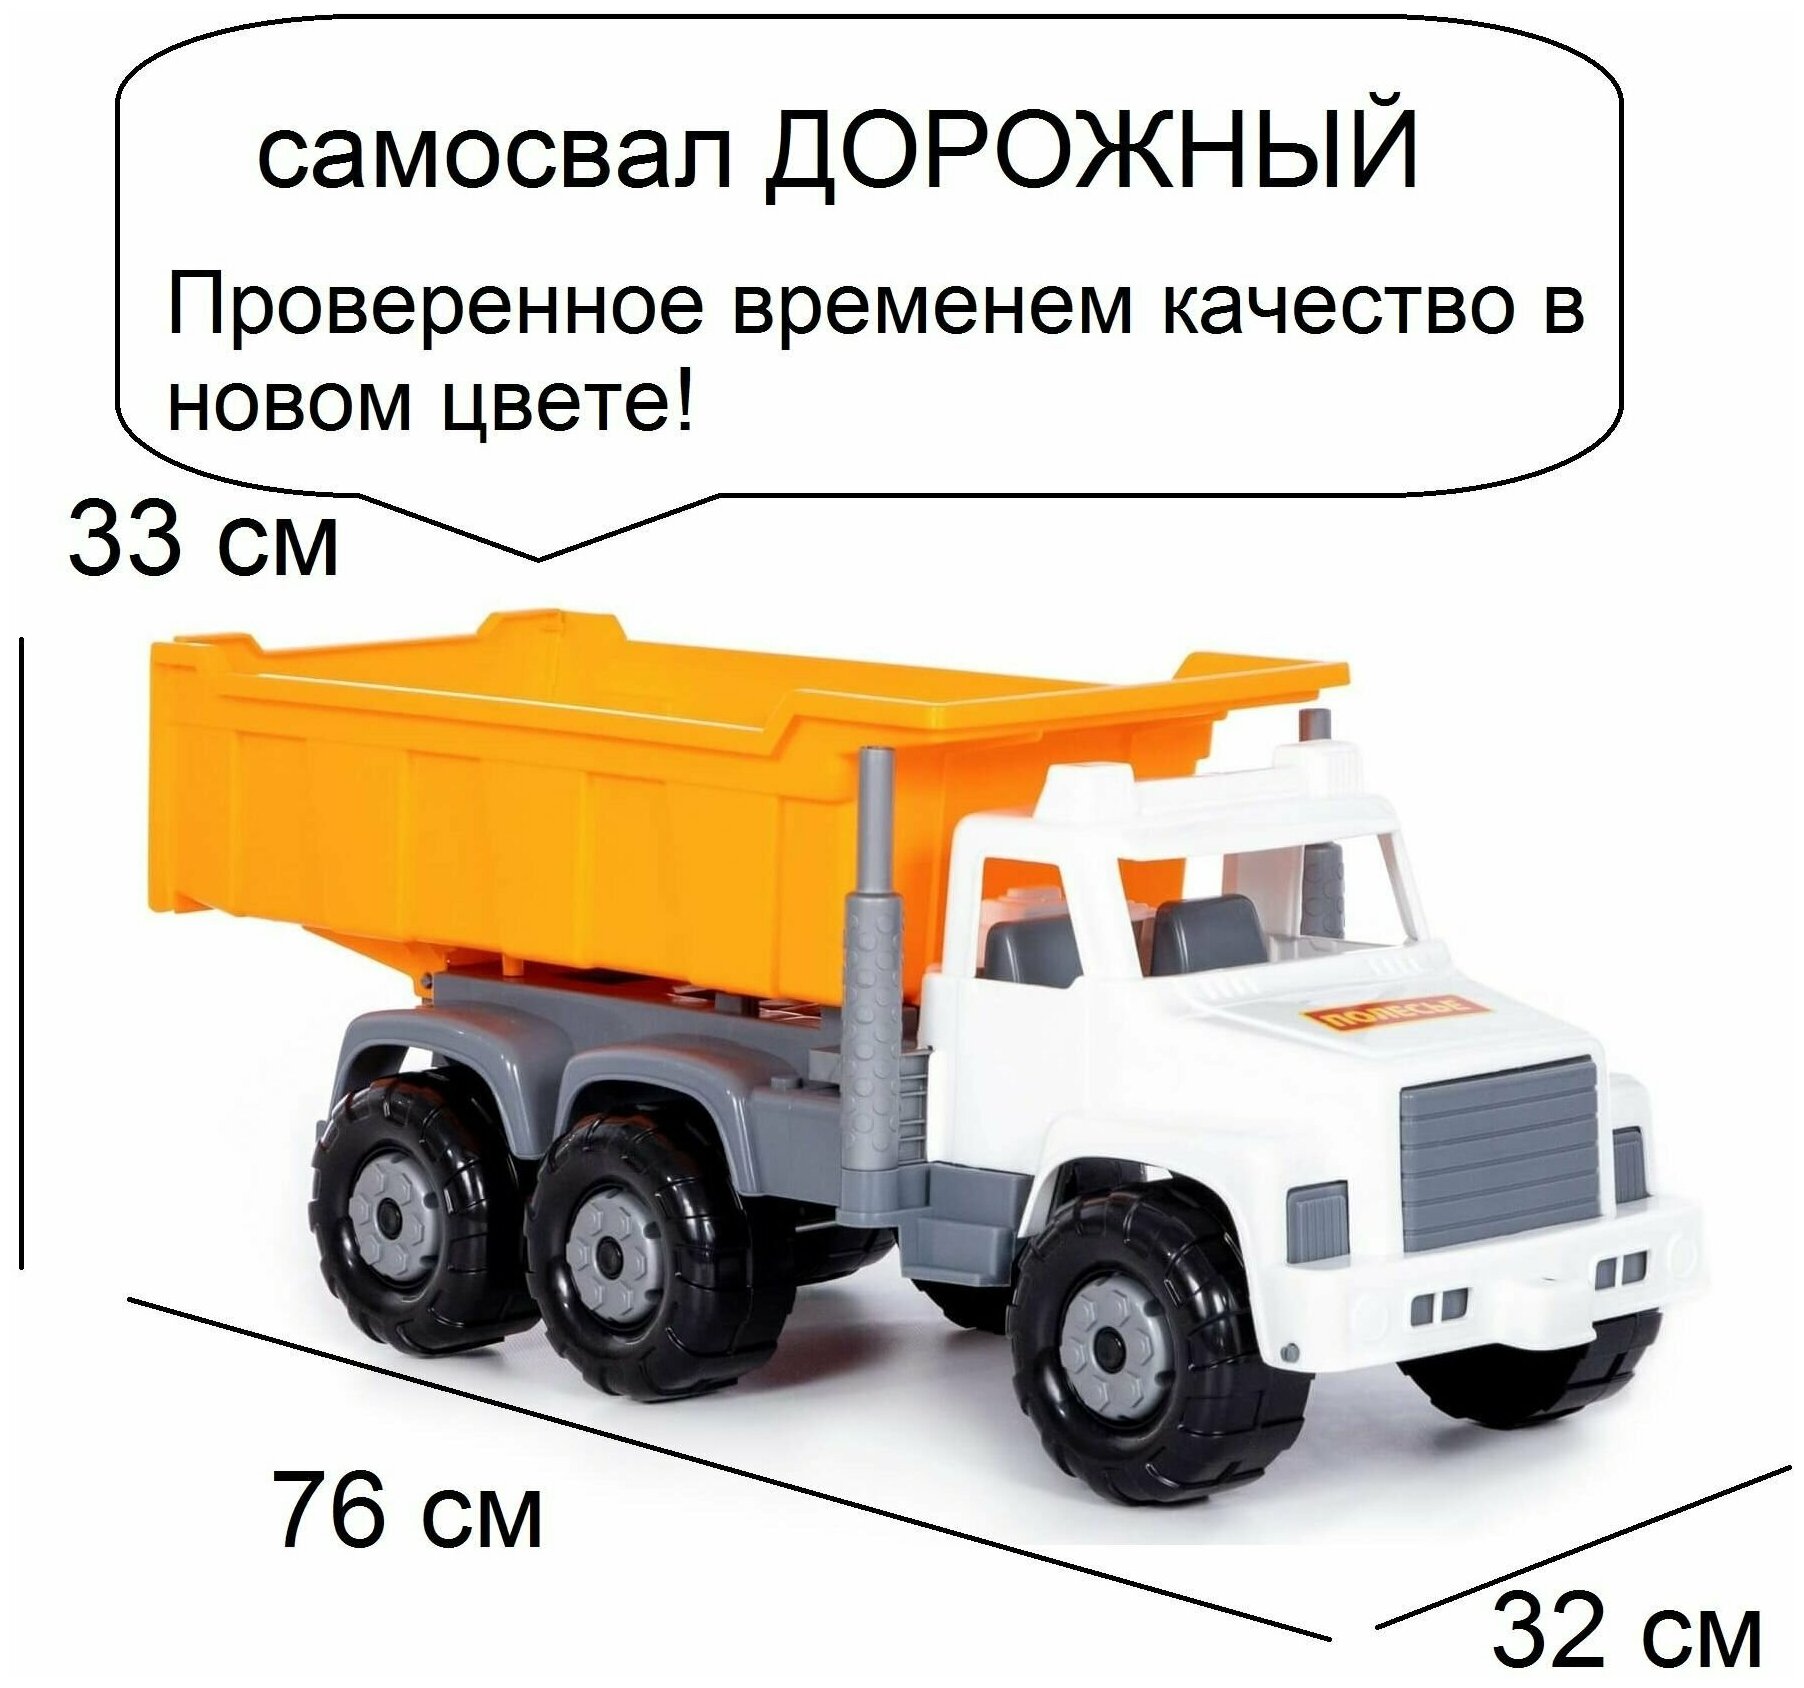 Игрушка самосвал грузовик Супергигант 76 см - автомобиль дорожный (бело-оранжевый)